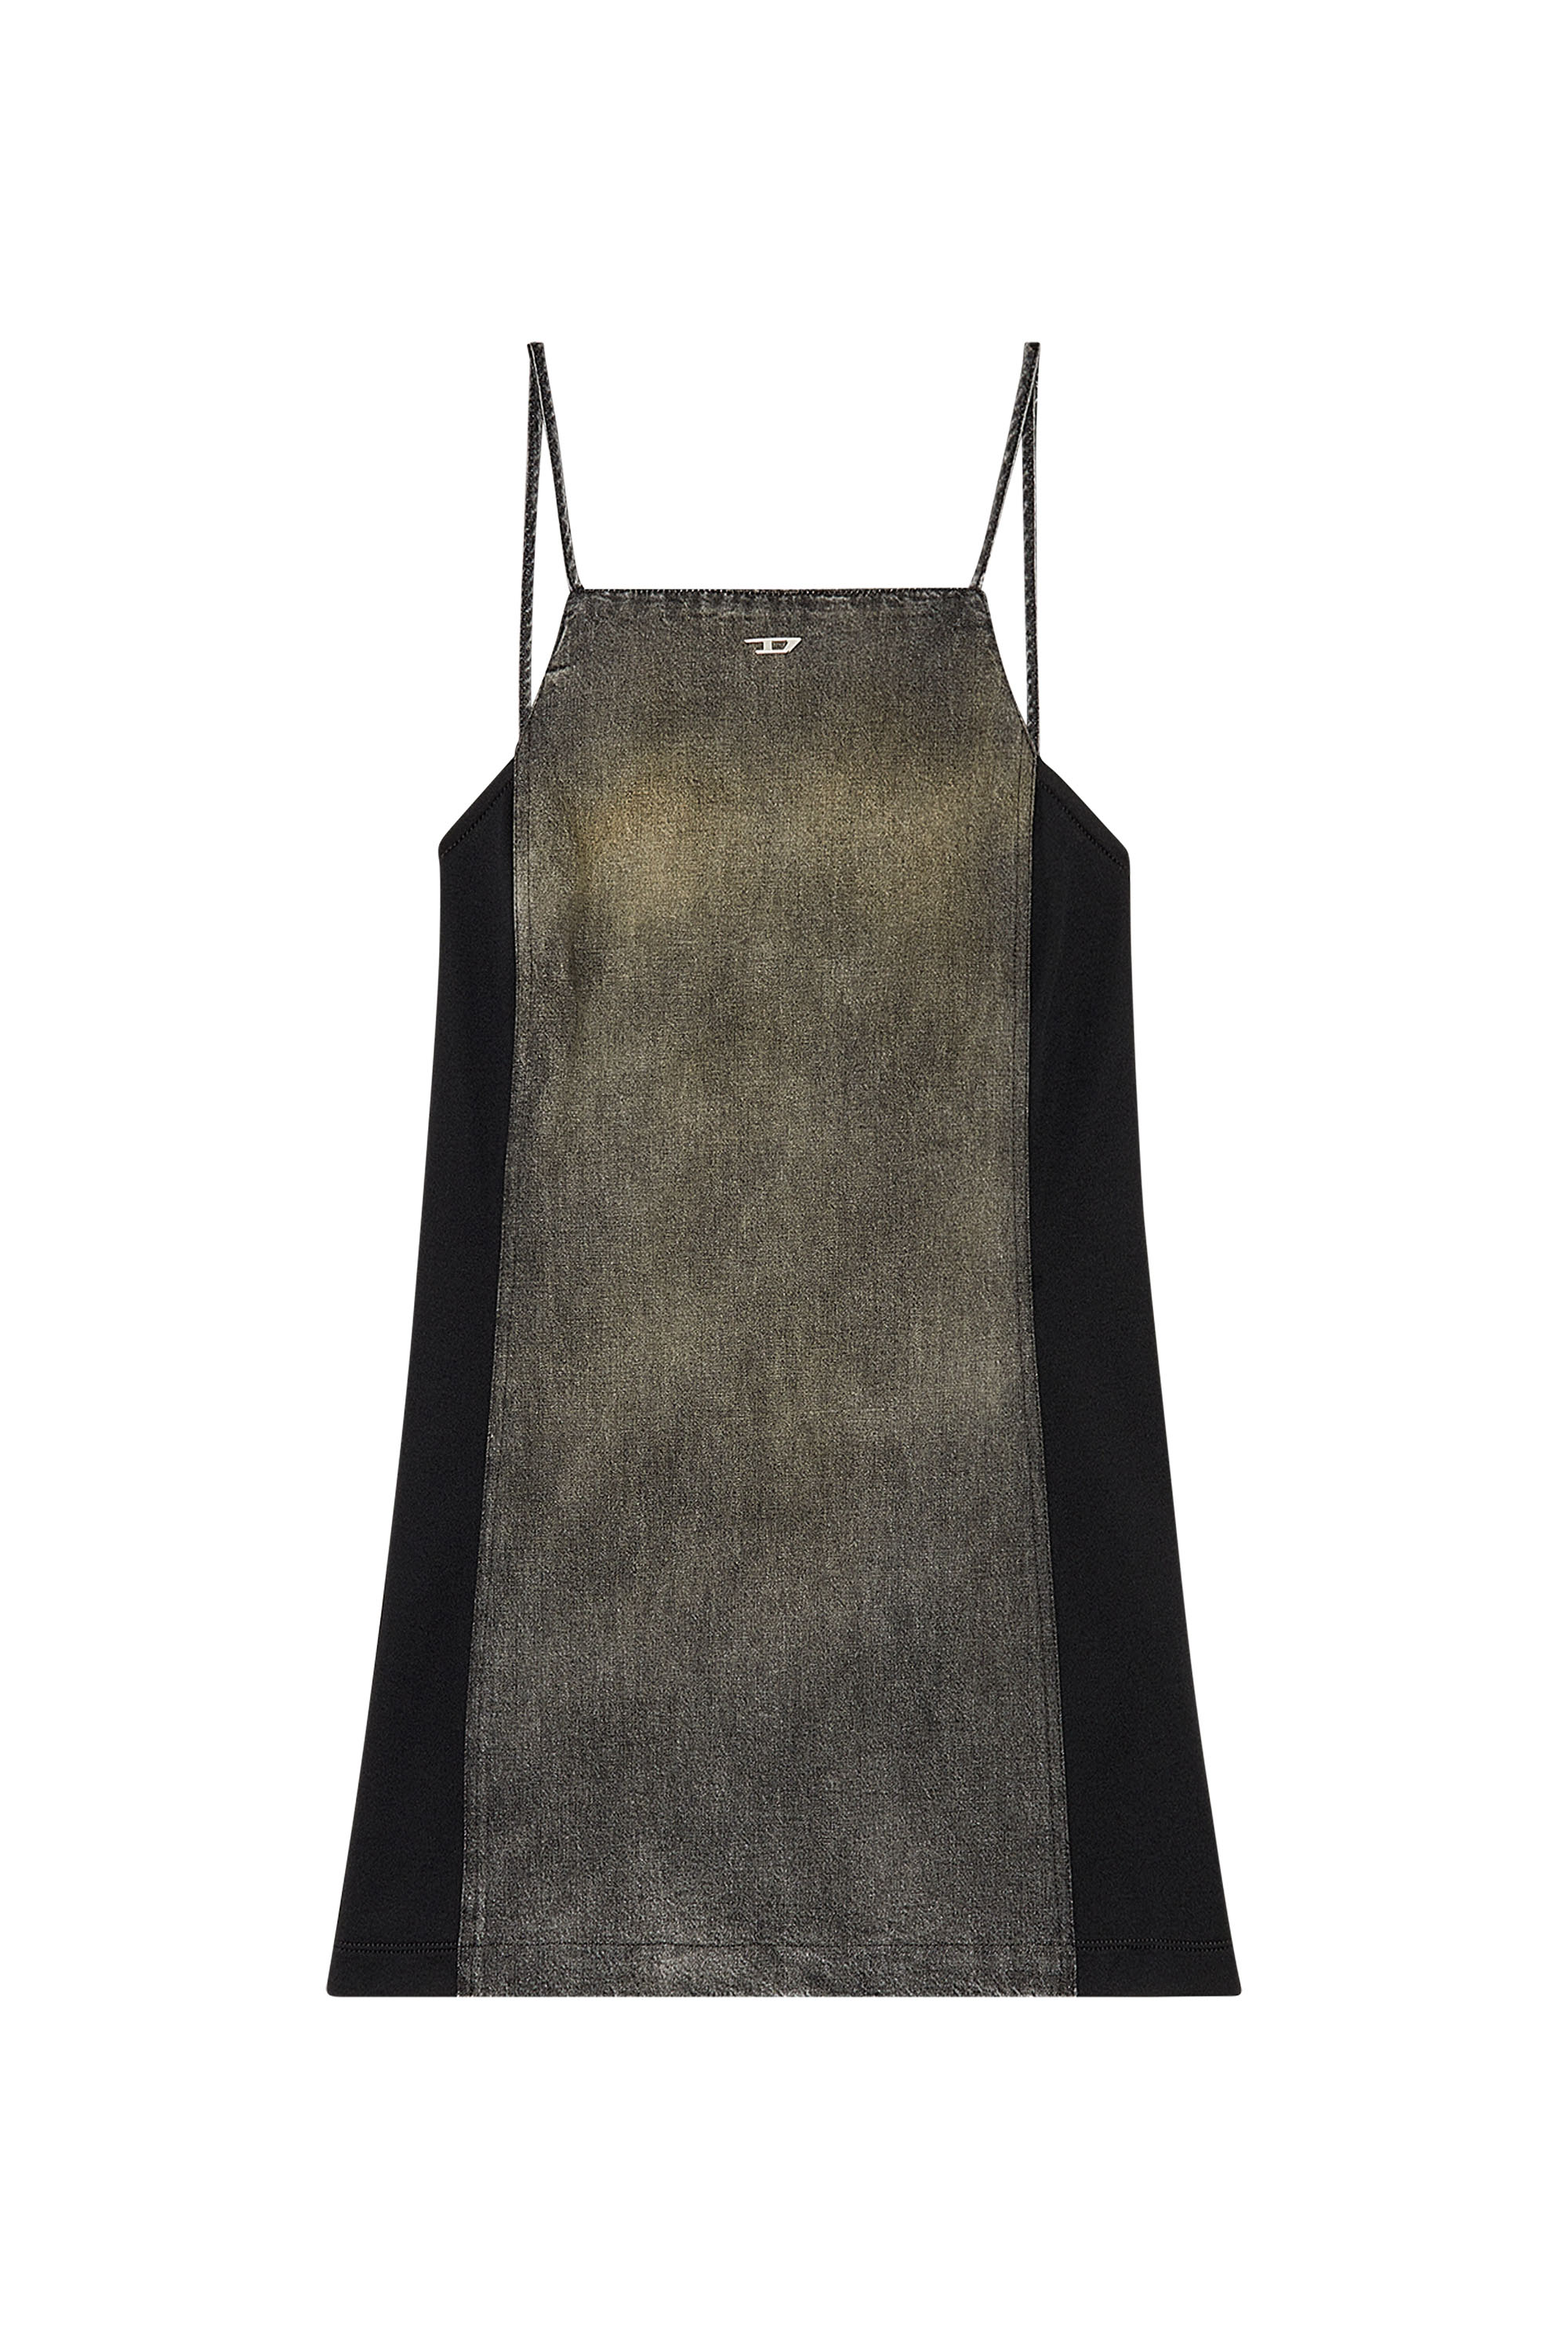 Diesel - DE-BETY-DRESS-S, Woman Denim dress in cotton and hemp in Black - Image 4